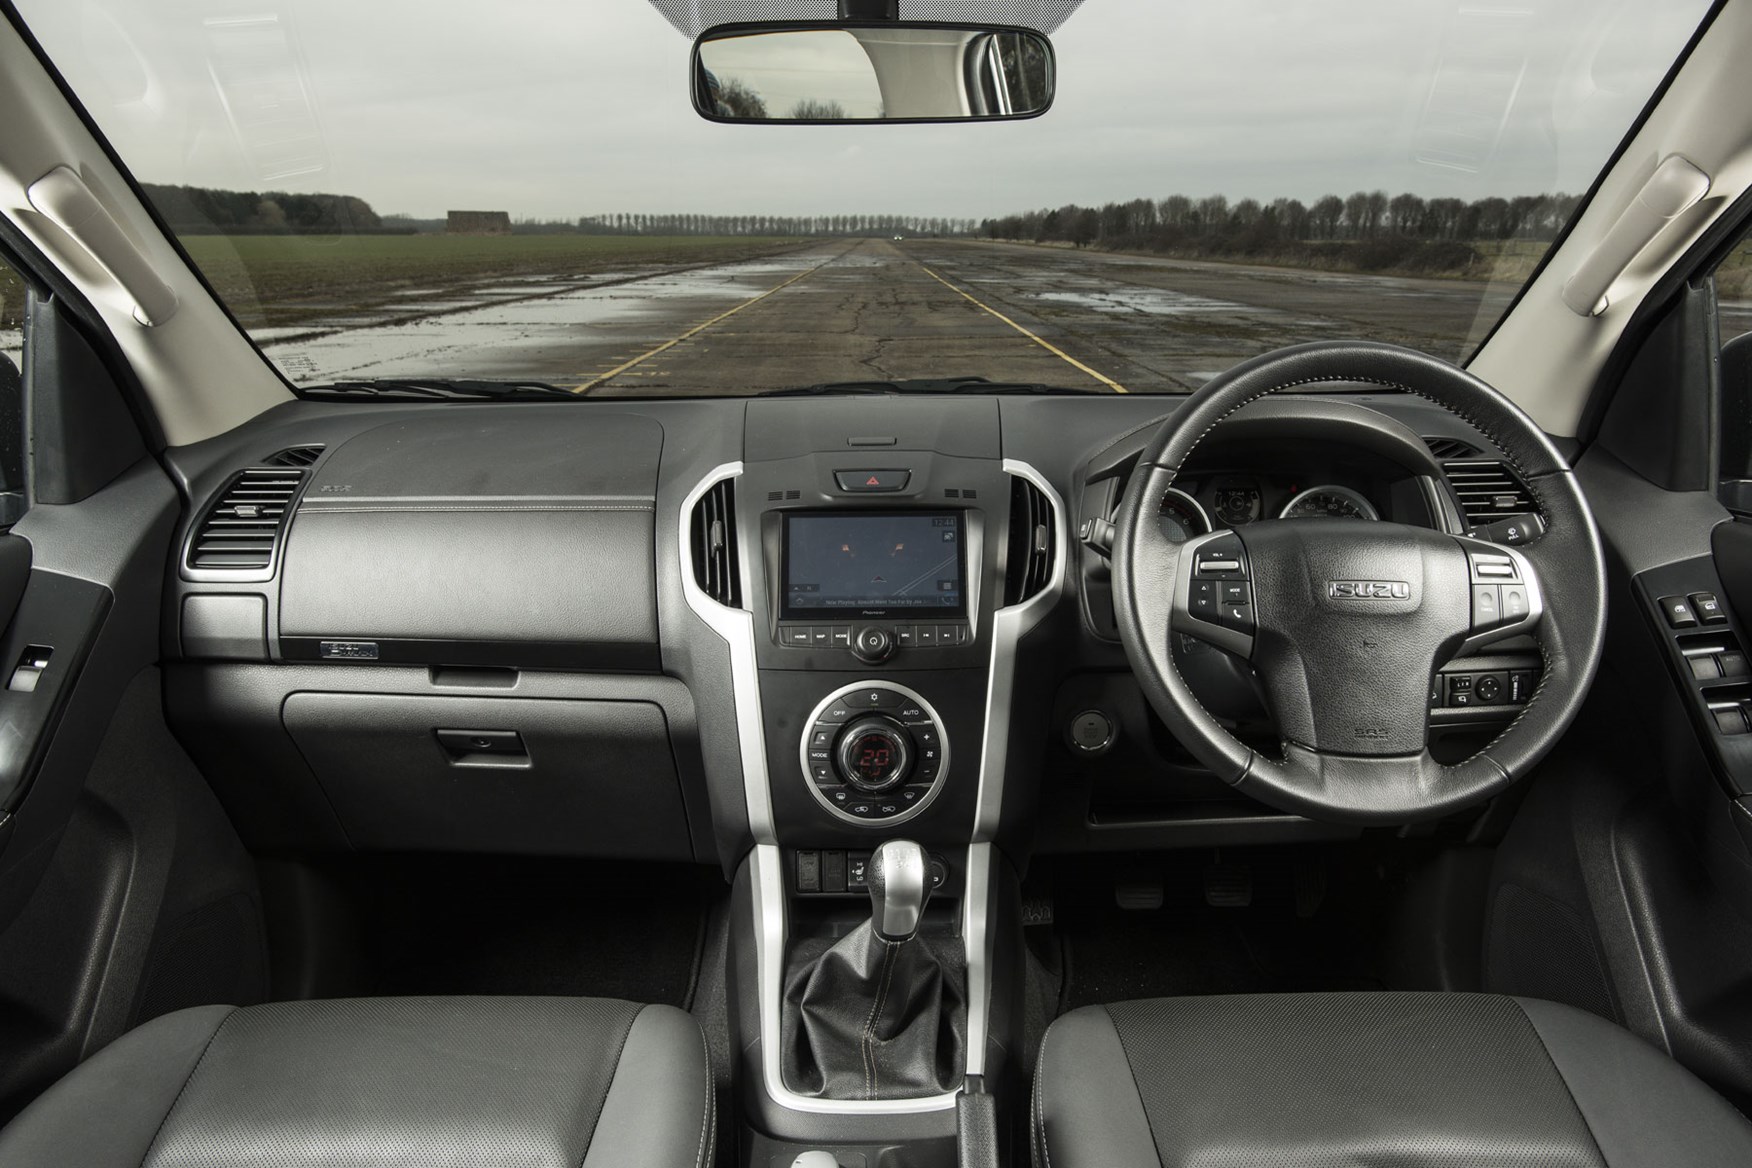 Isuzu D-Max V-Cross review - cab interior